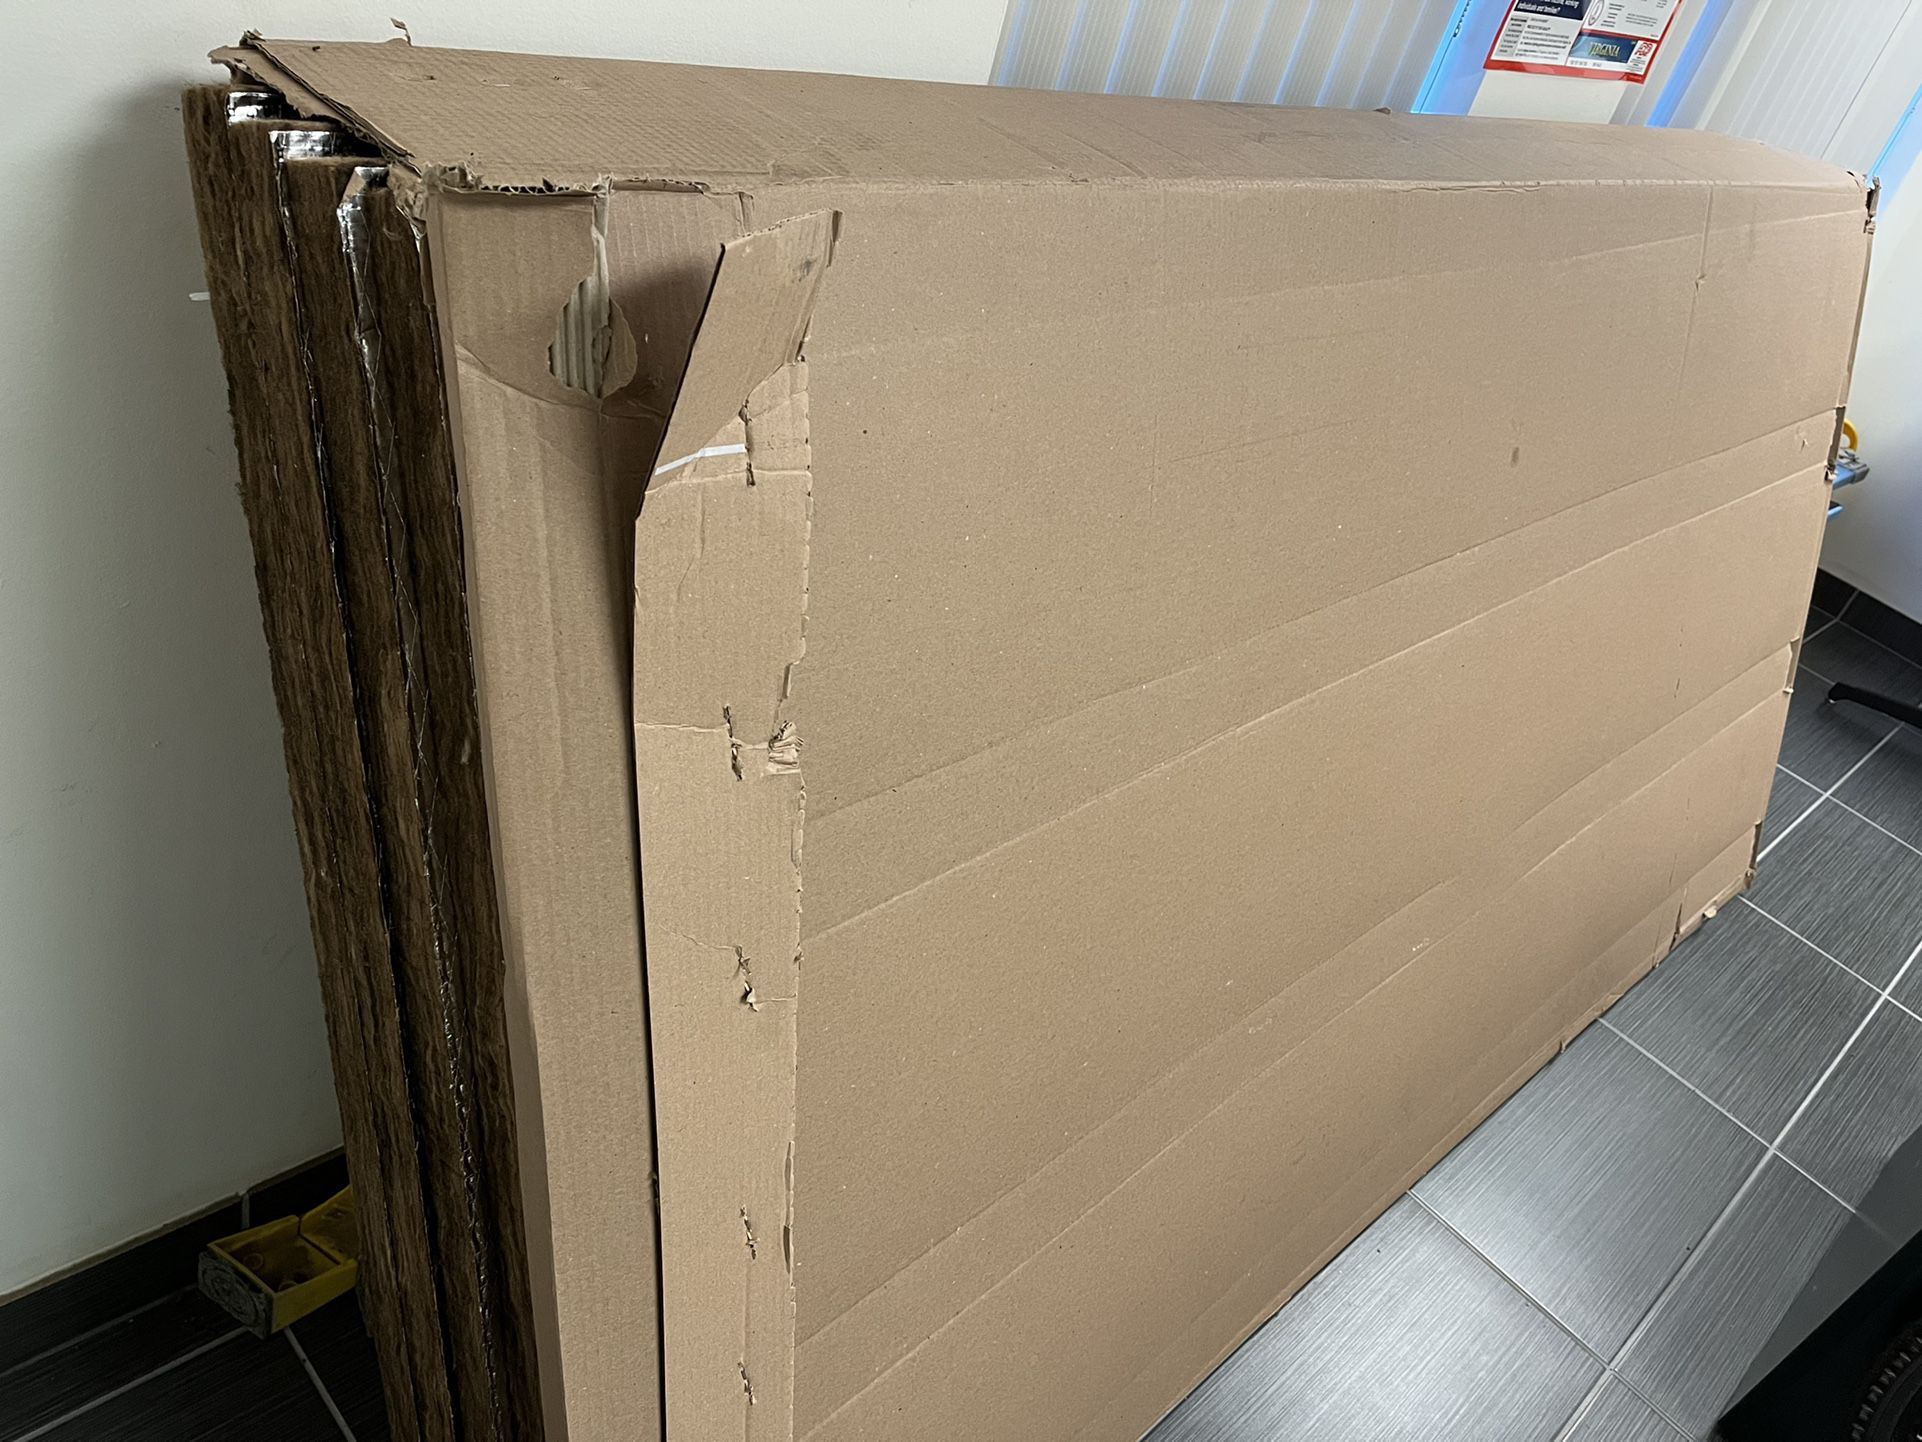 Fiberglass Insulation Boards, Faced, 4’x8’x2”, $25 Per Board, Quantity Available